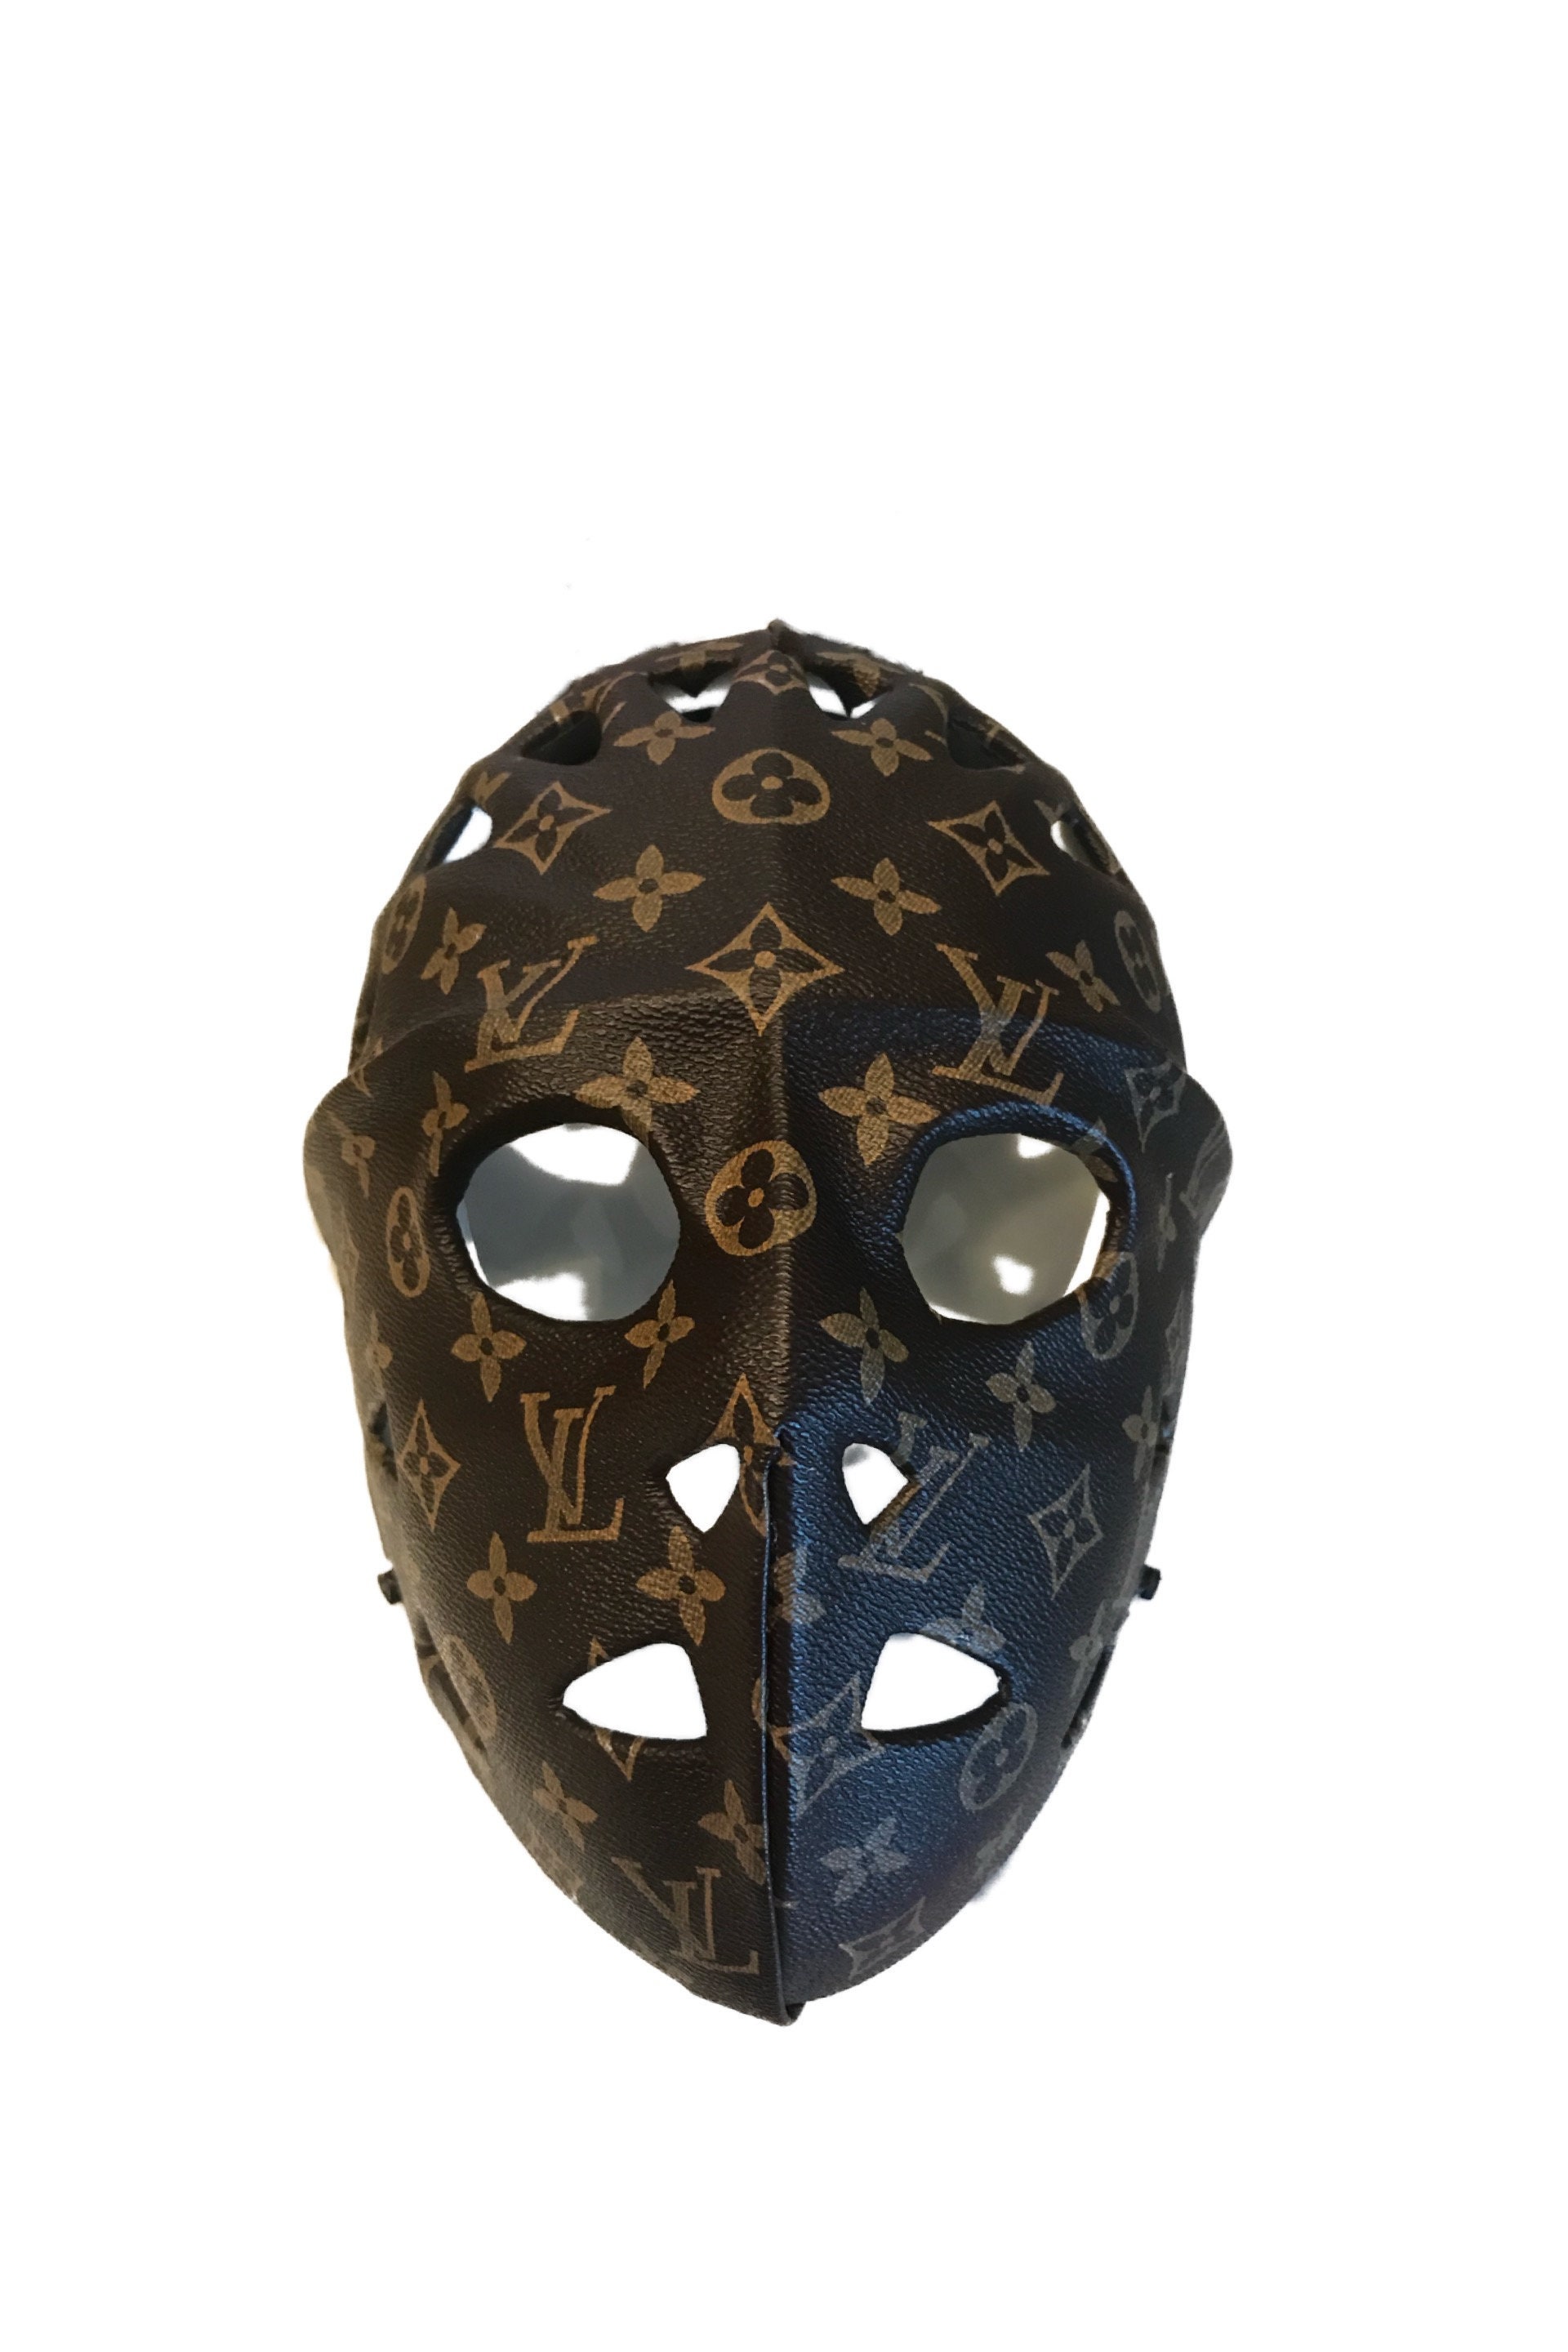 LV Jason mask .  Louis vuitton, Jason mask, Louis